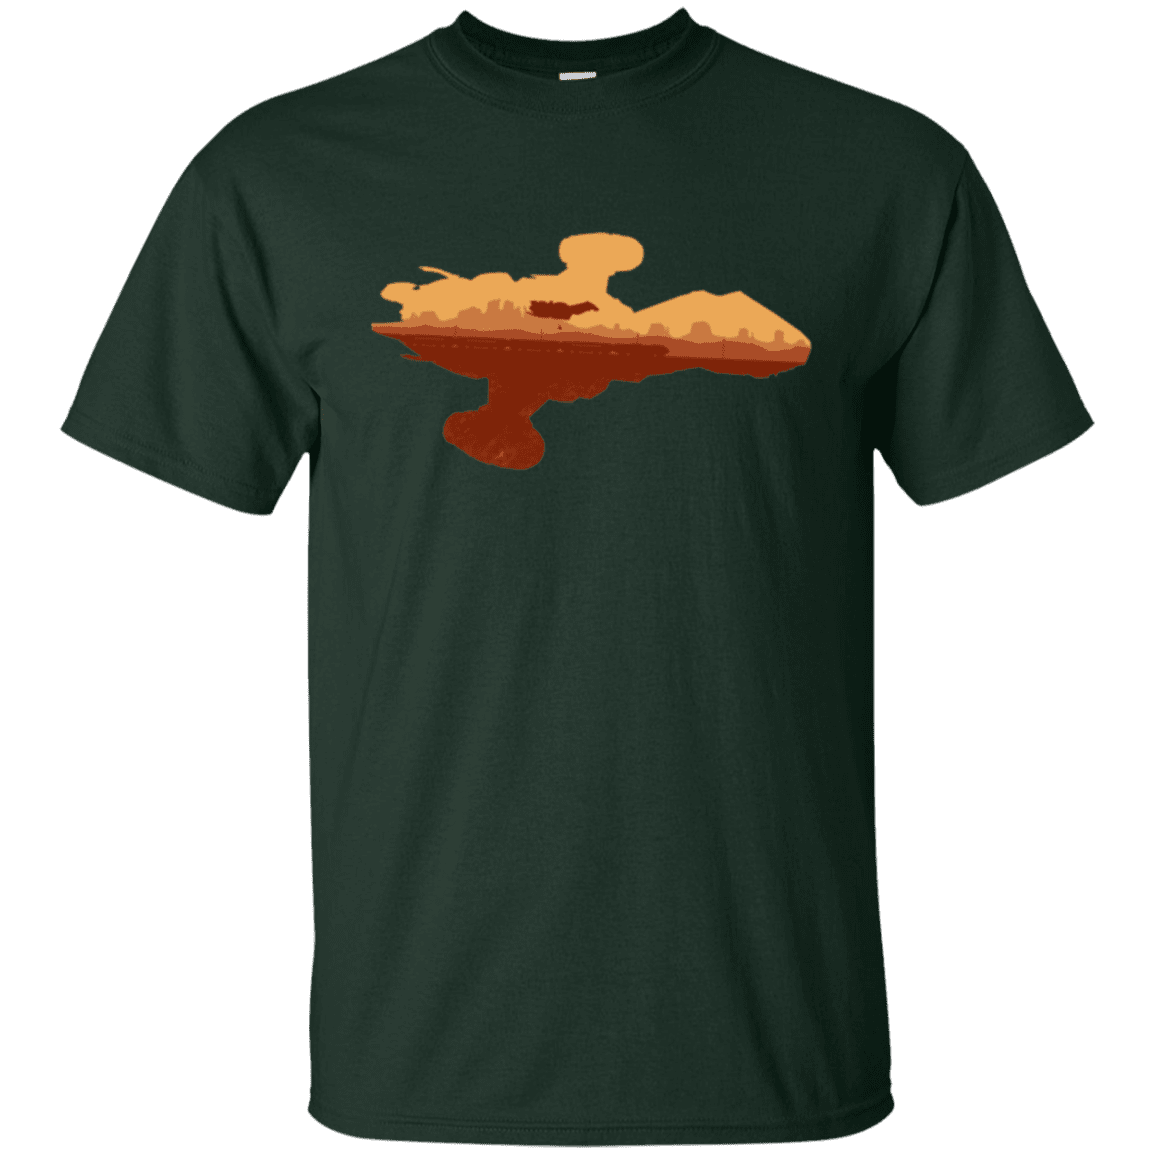 T-Shirts Forest Green / Small Train job T-Shirt